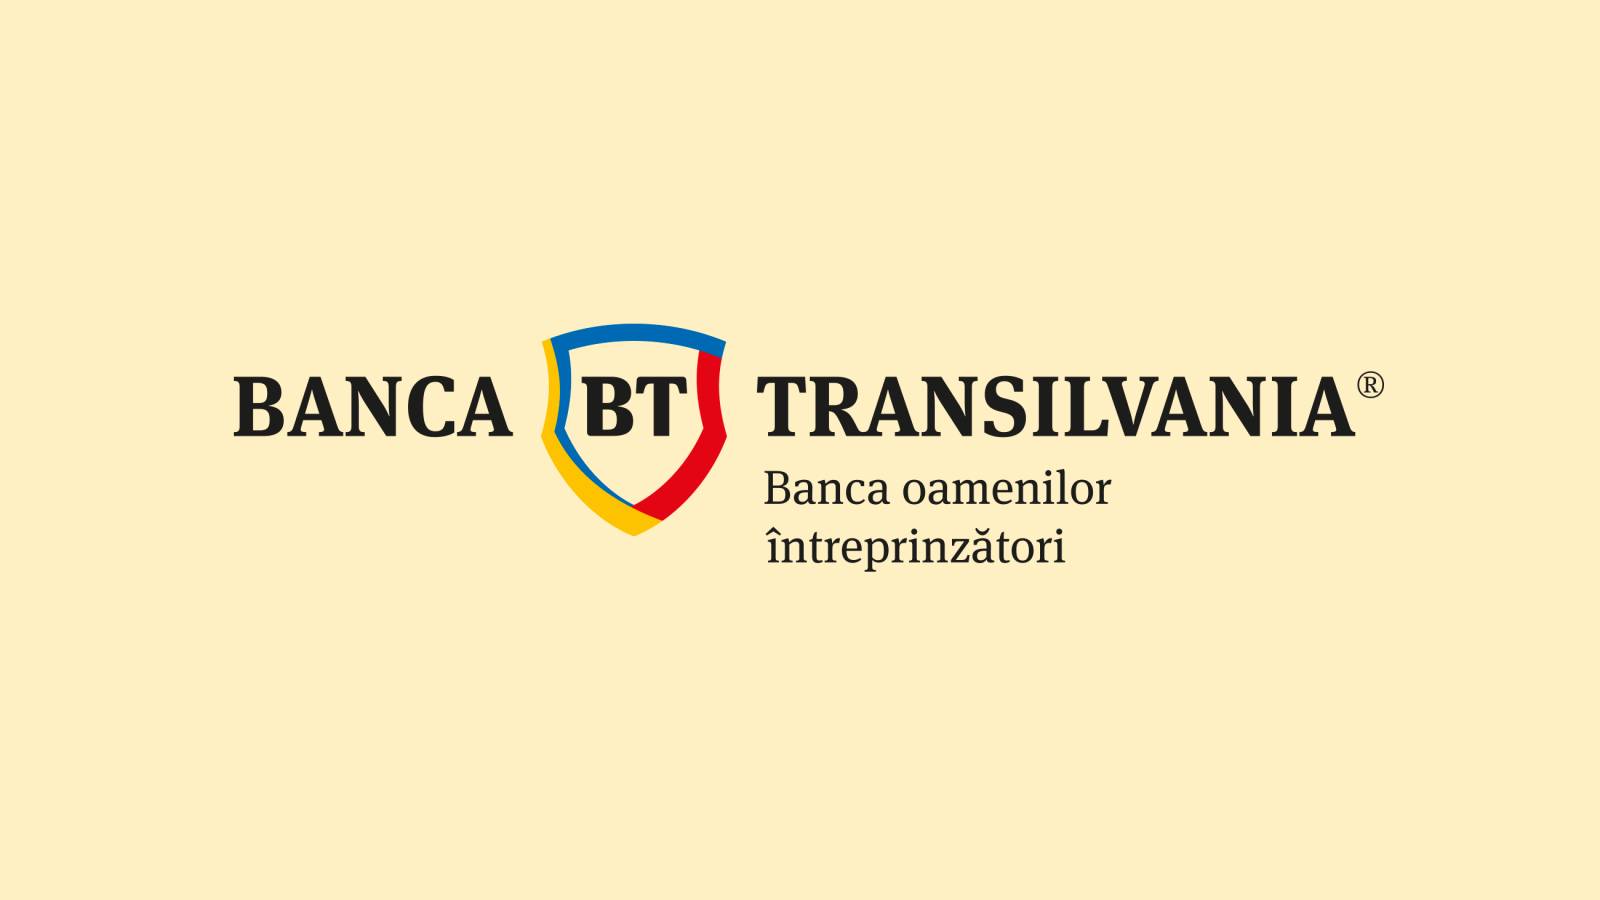 BANCA Transilvania IMPORTANTA Instiintare Mare Interes Toti Clientii Romania